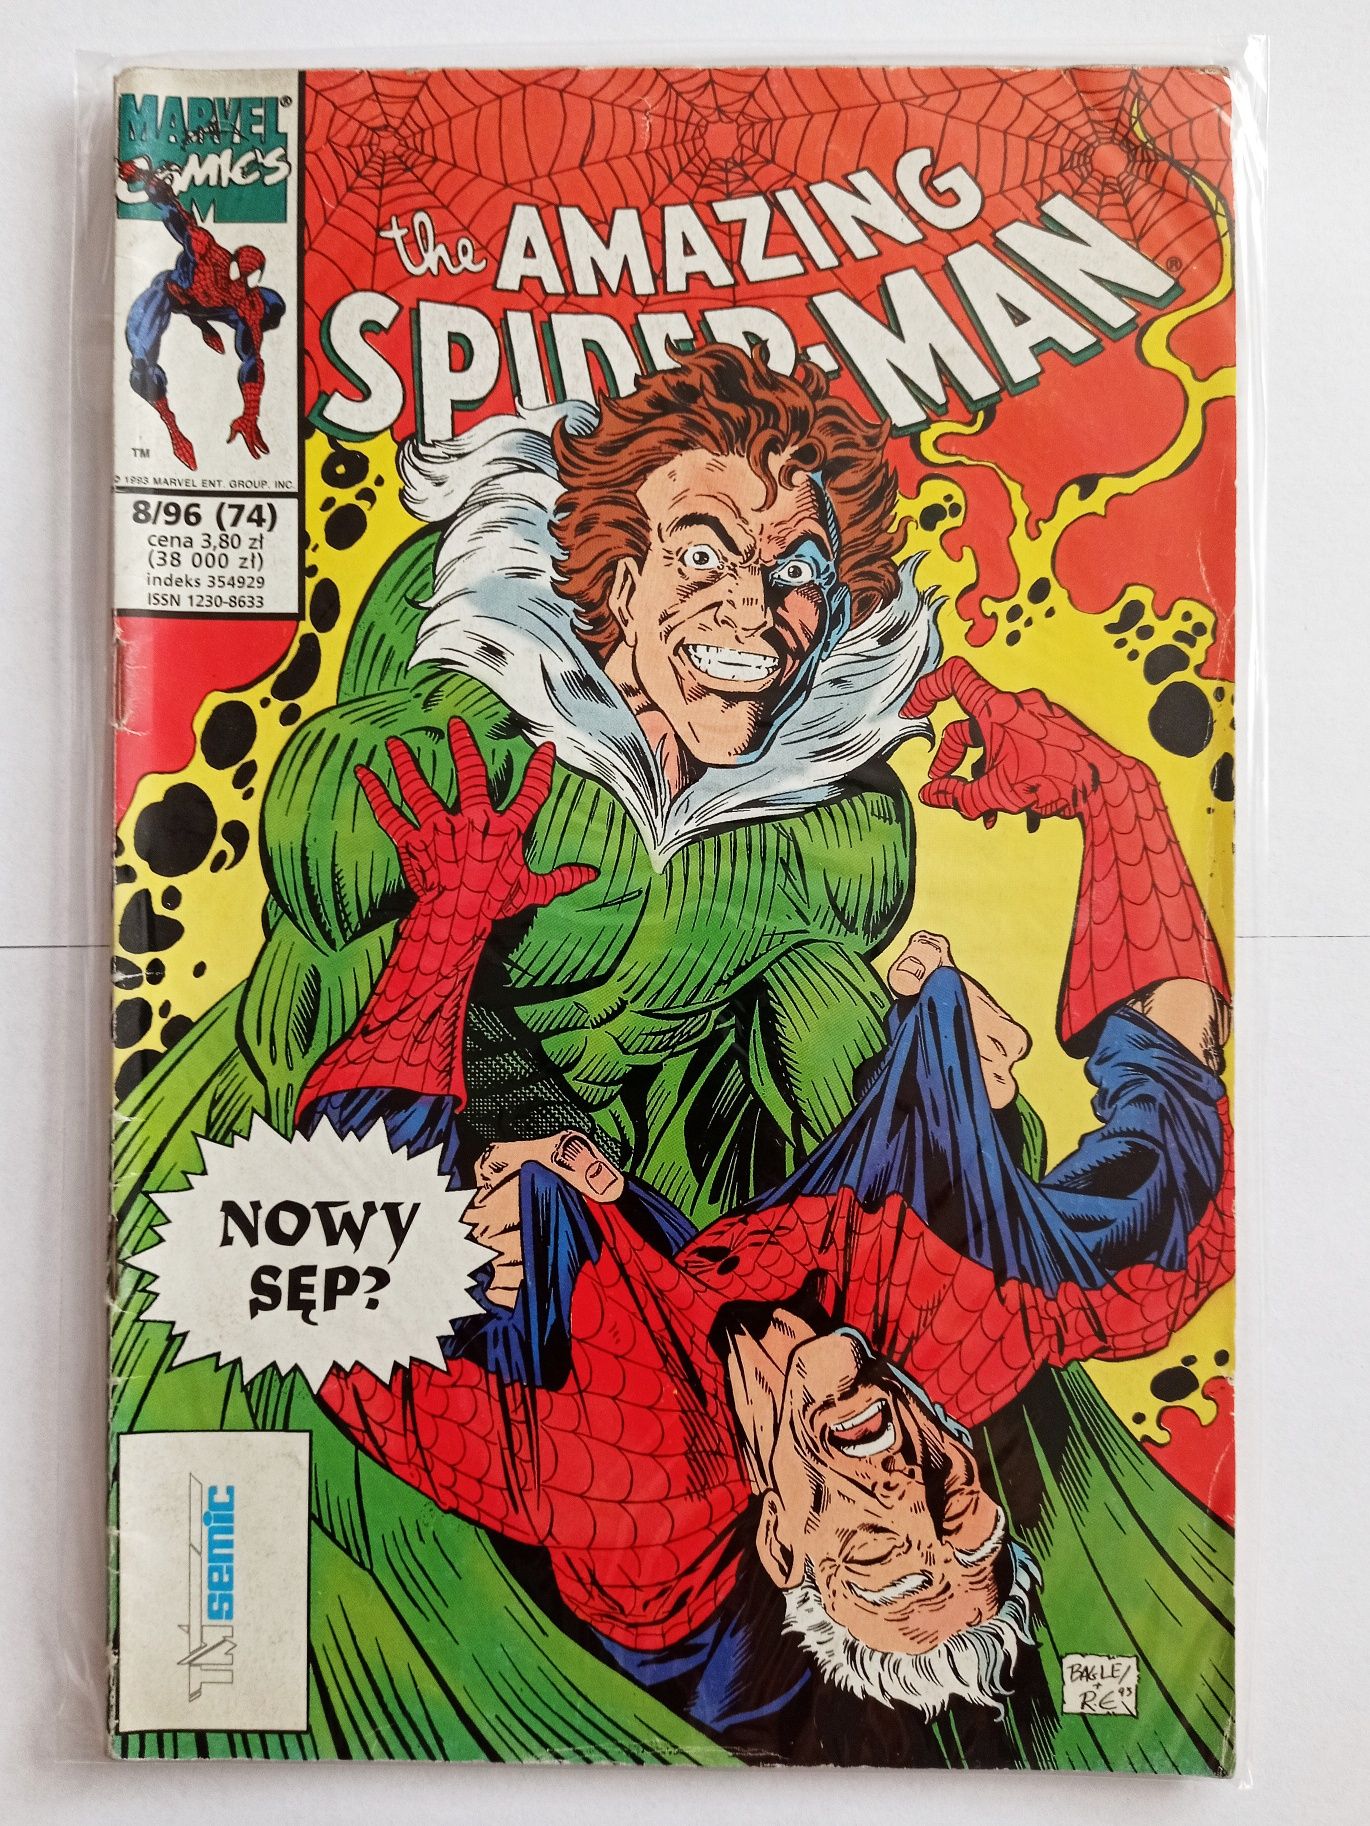 The amazing Spiderman 8/96